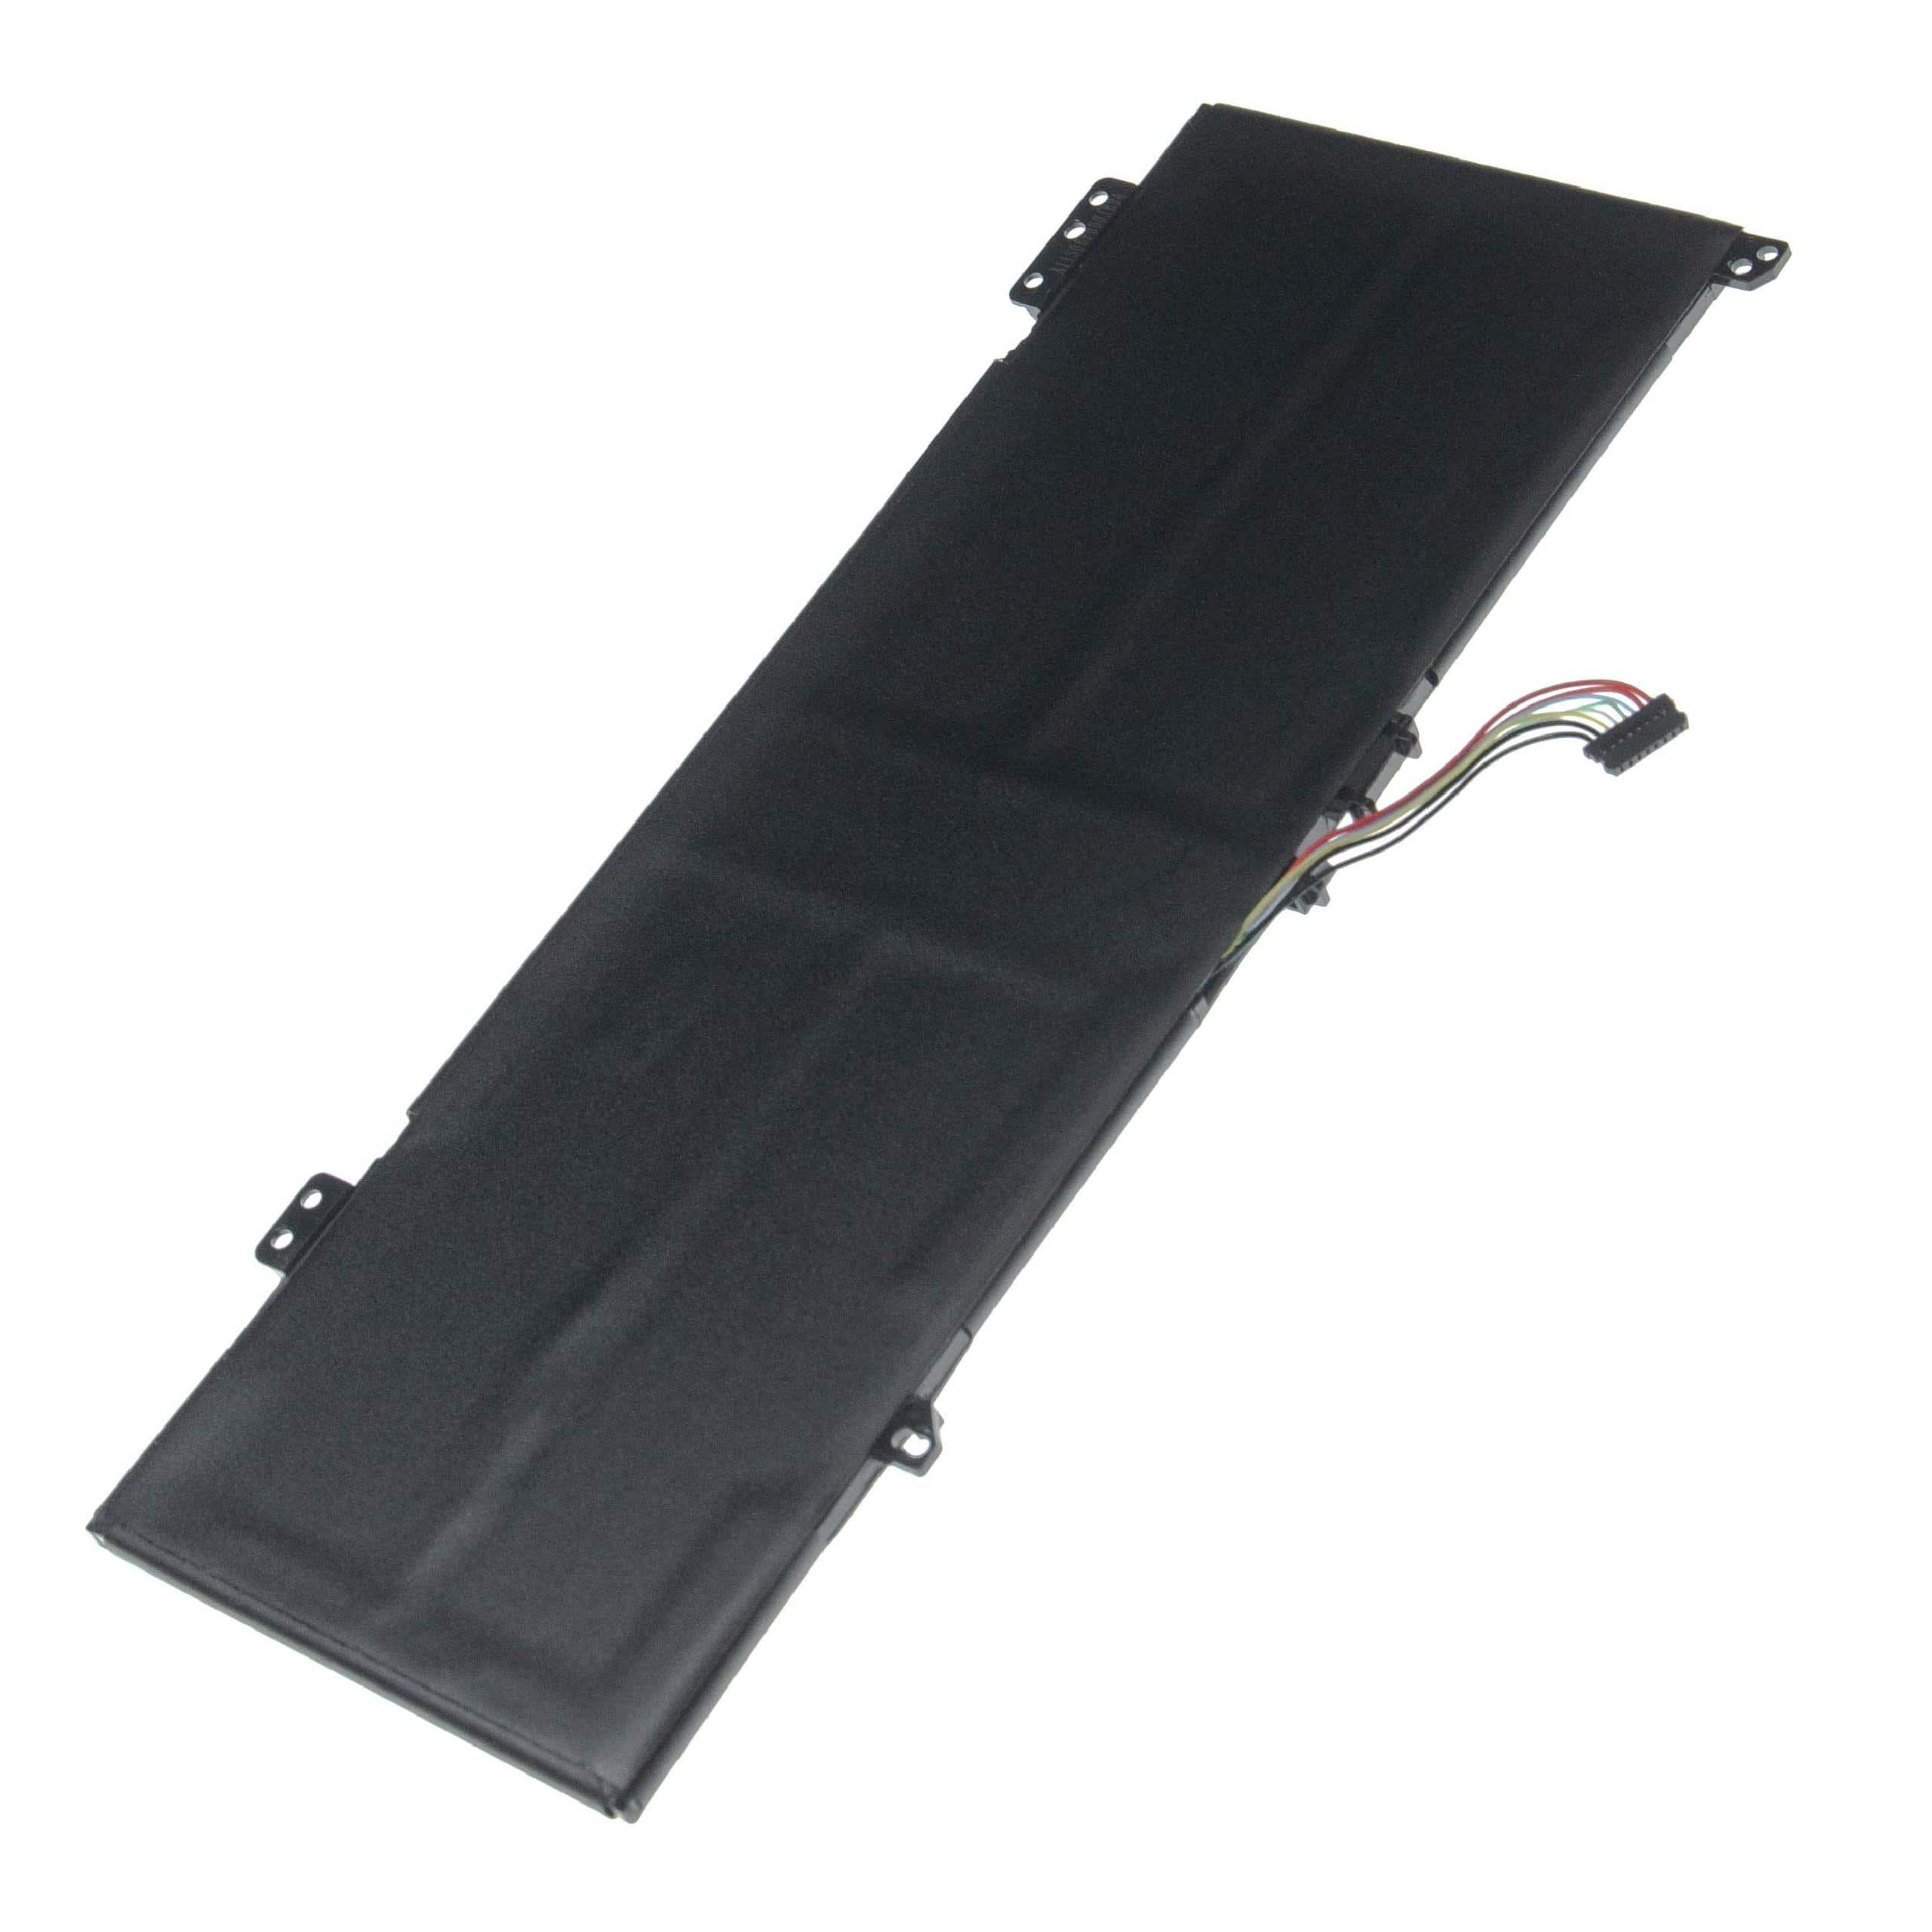 Notebook Battery Replacement for Lenovo 5B10Q16067, 5B10Q16066, 5B10Q22883 - 5800mAh 7.68V Li-polymer, black